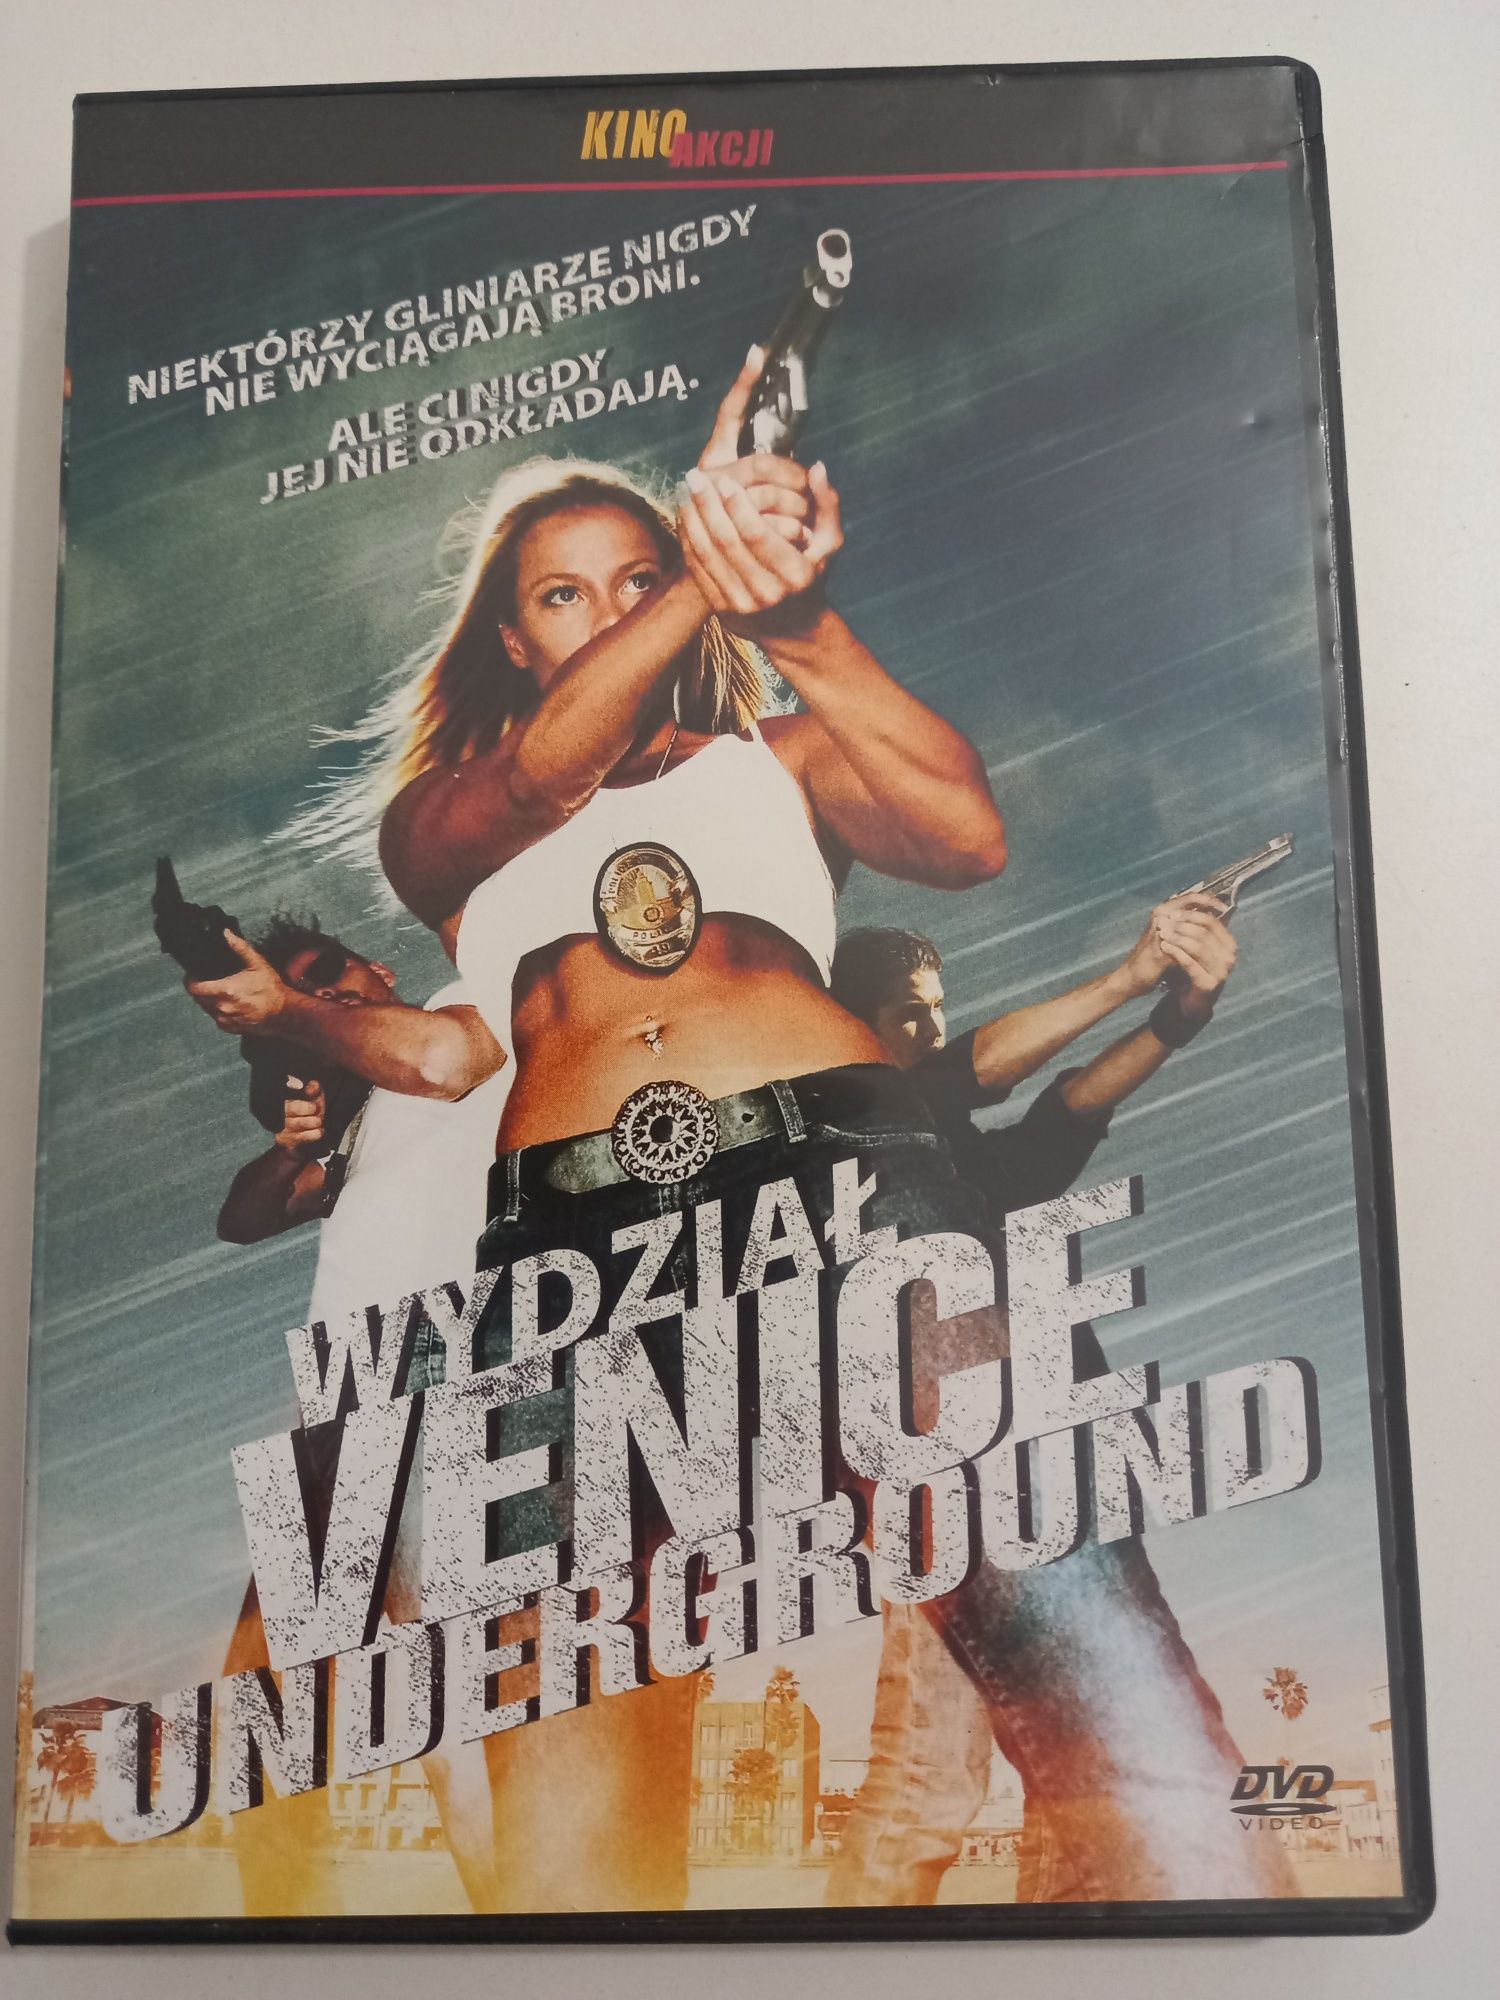 Film Wydział Venice Underground DVD Video